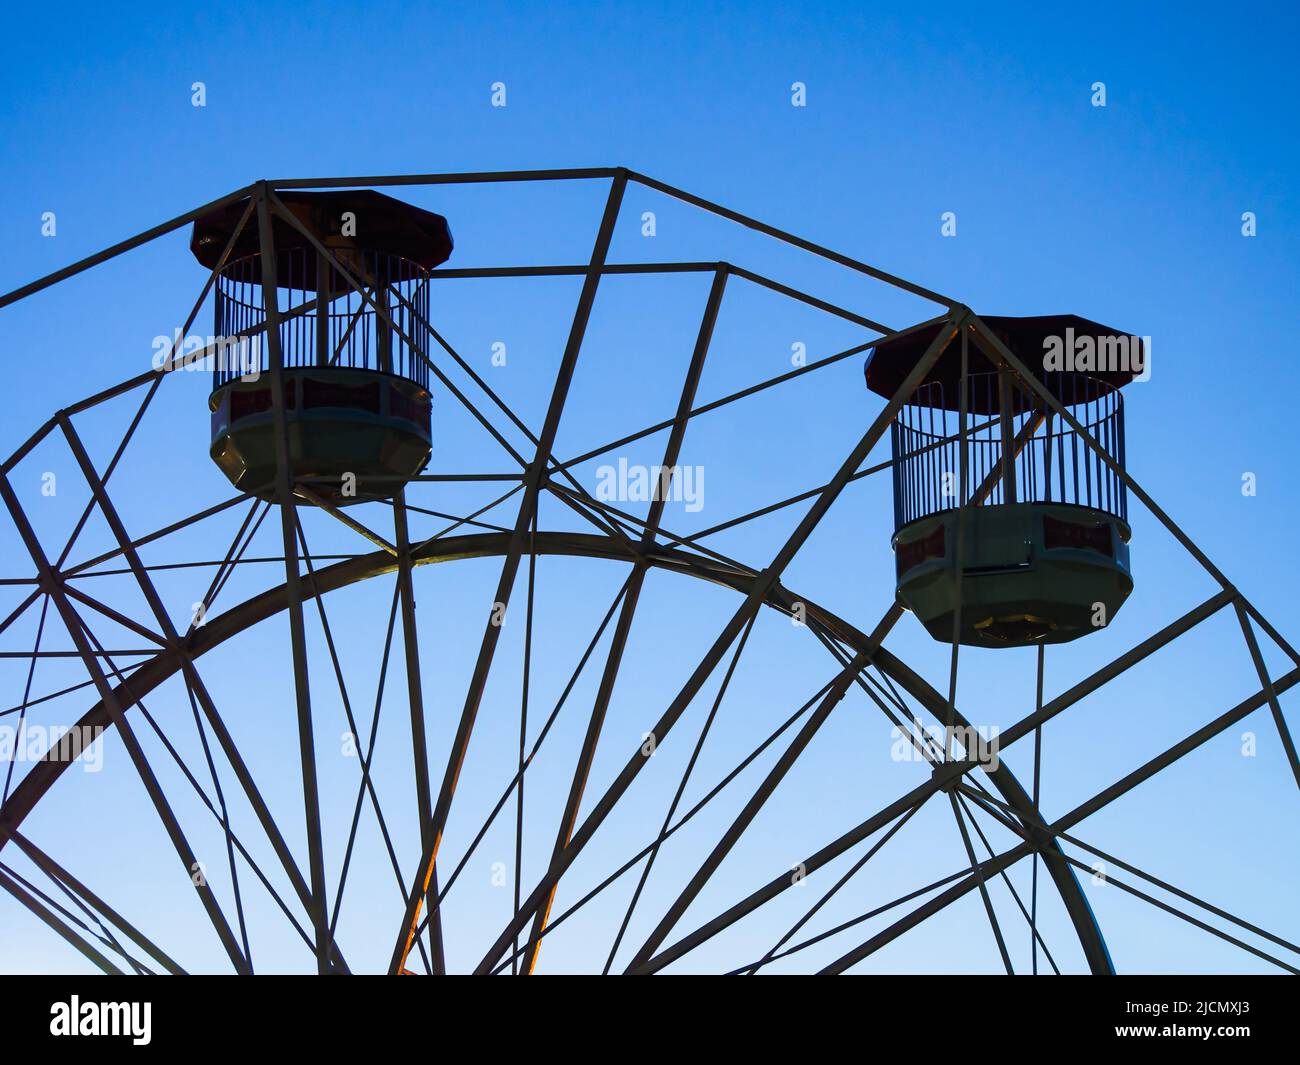 SOUTHEND-ON-SEA, ESSEX, Royaume-Uni - 03 AOÛT 2018 : silhouette de la grande roue de Ferris dans le parc d'attractions Adventure Island, contre le ciel bleu Banque D'Images